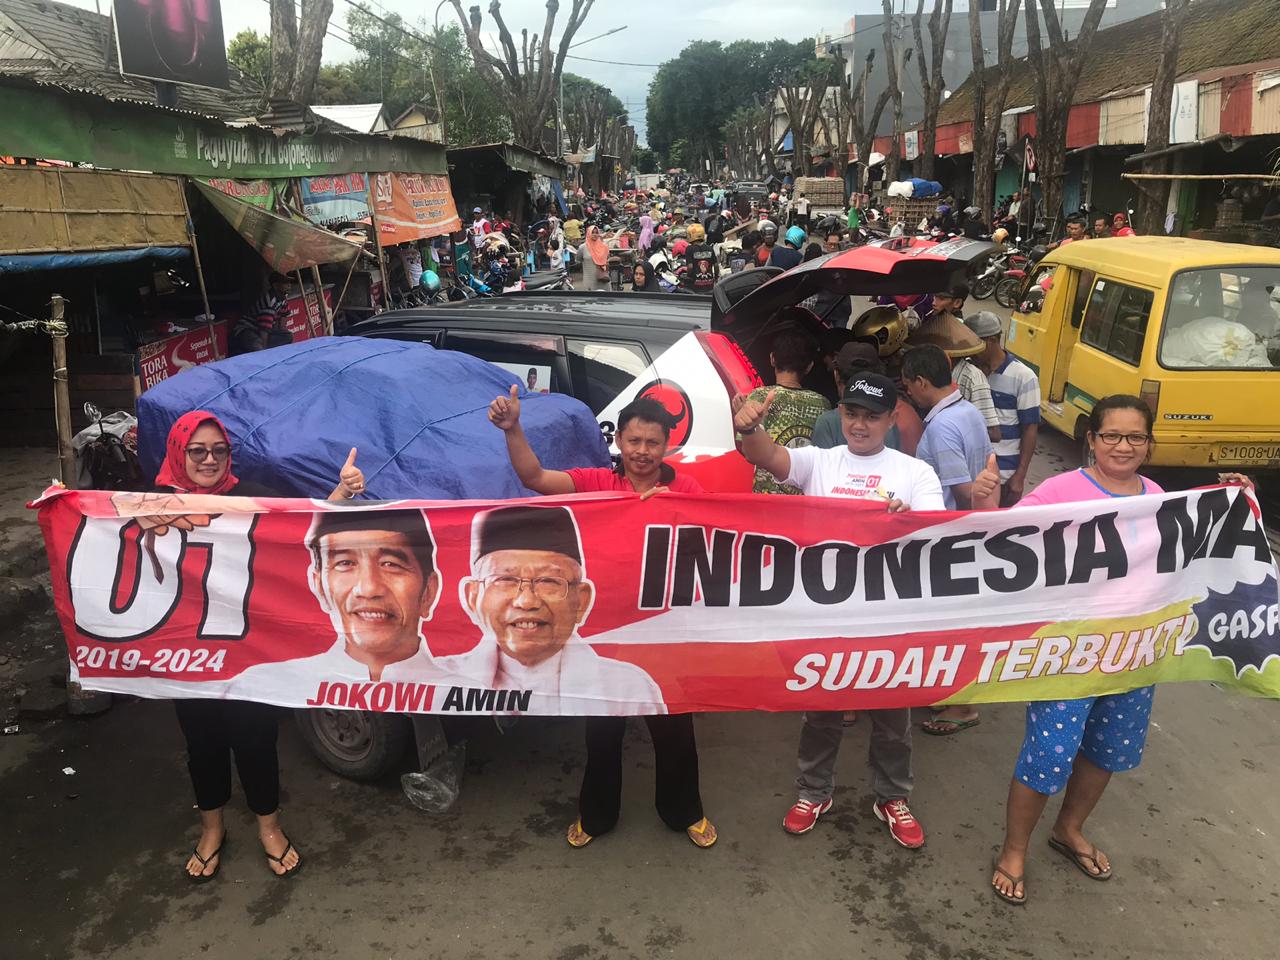 Mudiani berfoto bersama di Pasar Kota Bojonegoro, Jawa Timur, Kamis (7/3/2019). (Foto: dokumentasi Mudiani)